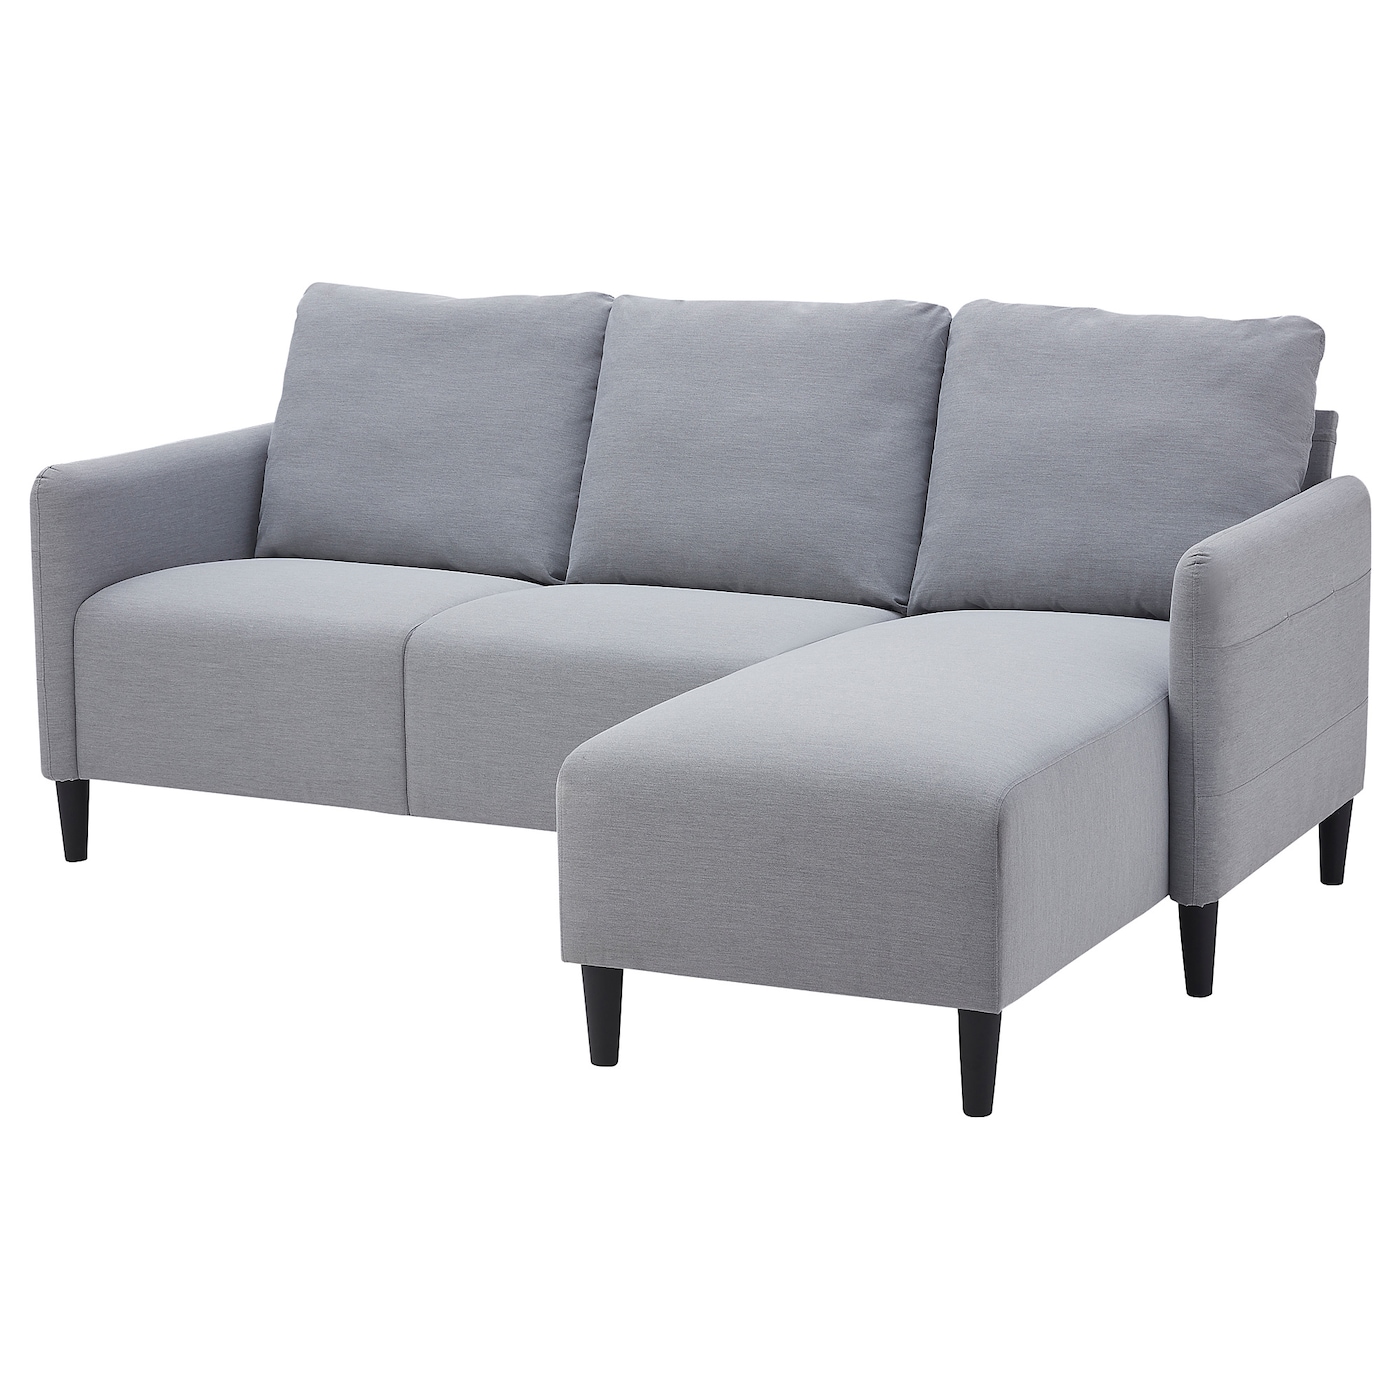 3-местный диван с шезлонгом, IKEA ANGERSBY,  84x196см, светло-серый, АНГЕРСБИ ИКЕА